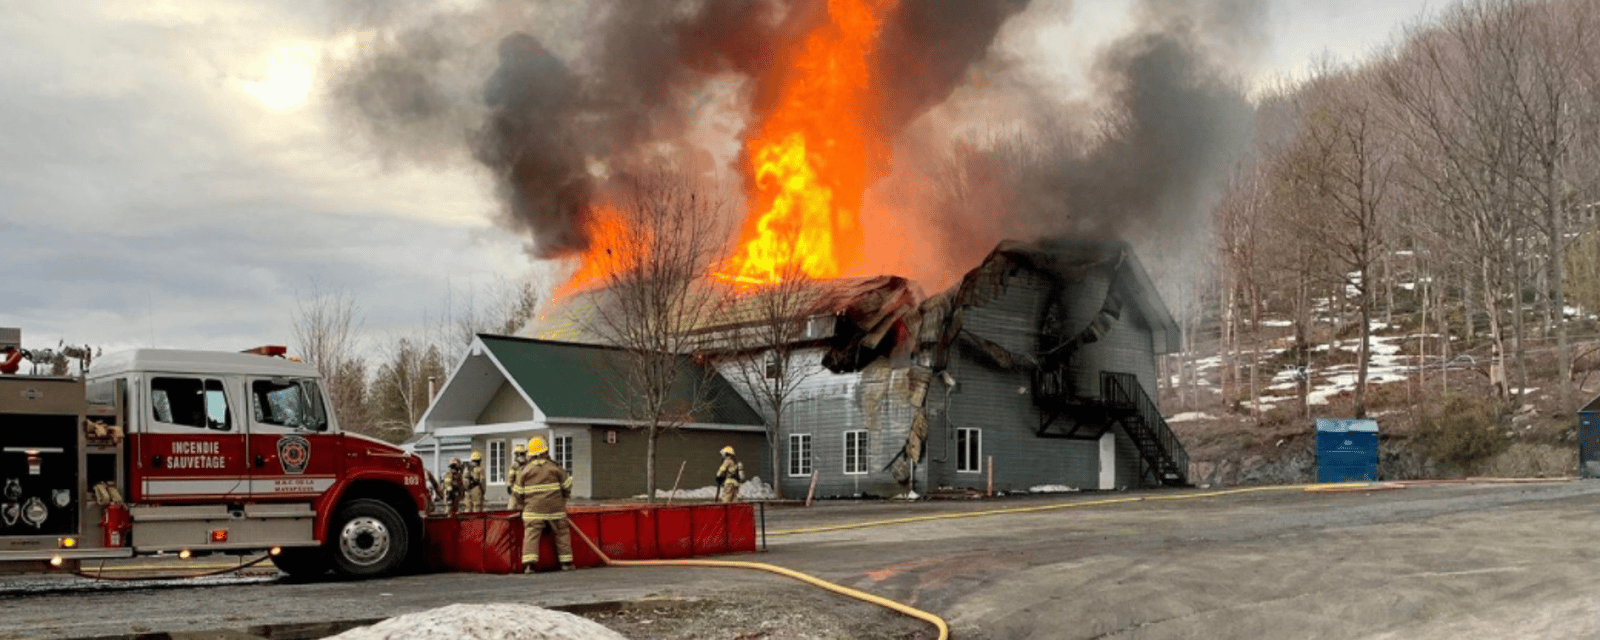 Un incendie majeur ravage complètement un fleuron du tourisme québécois